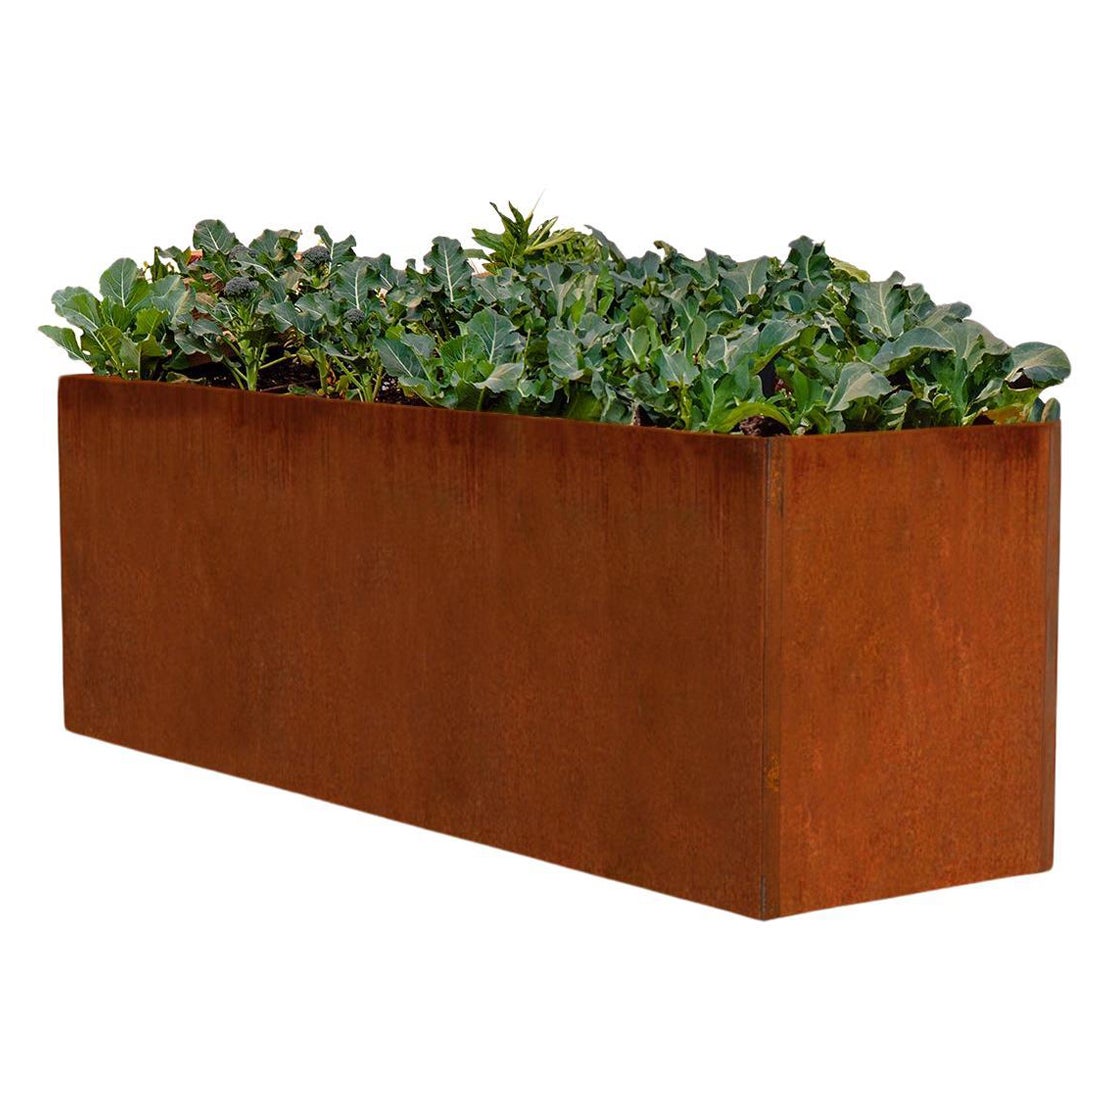 Jardinière ou boîte de jardin Edible Corten en acier (6,5' X 2' X 2,5')